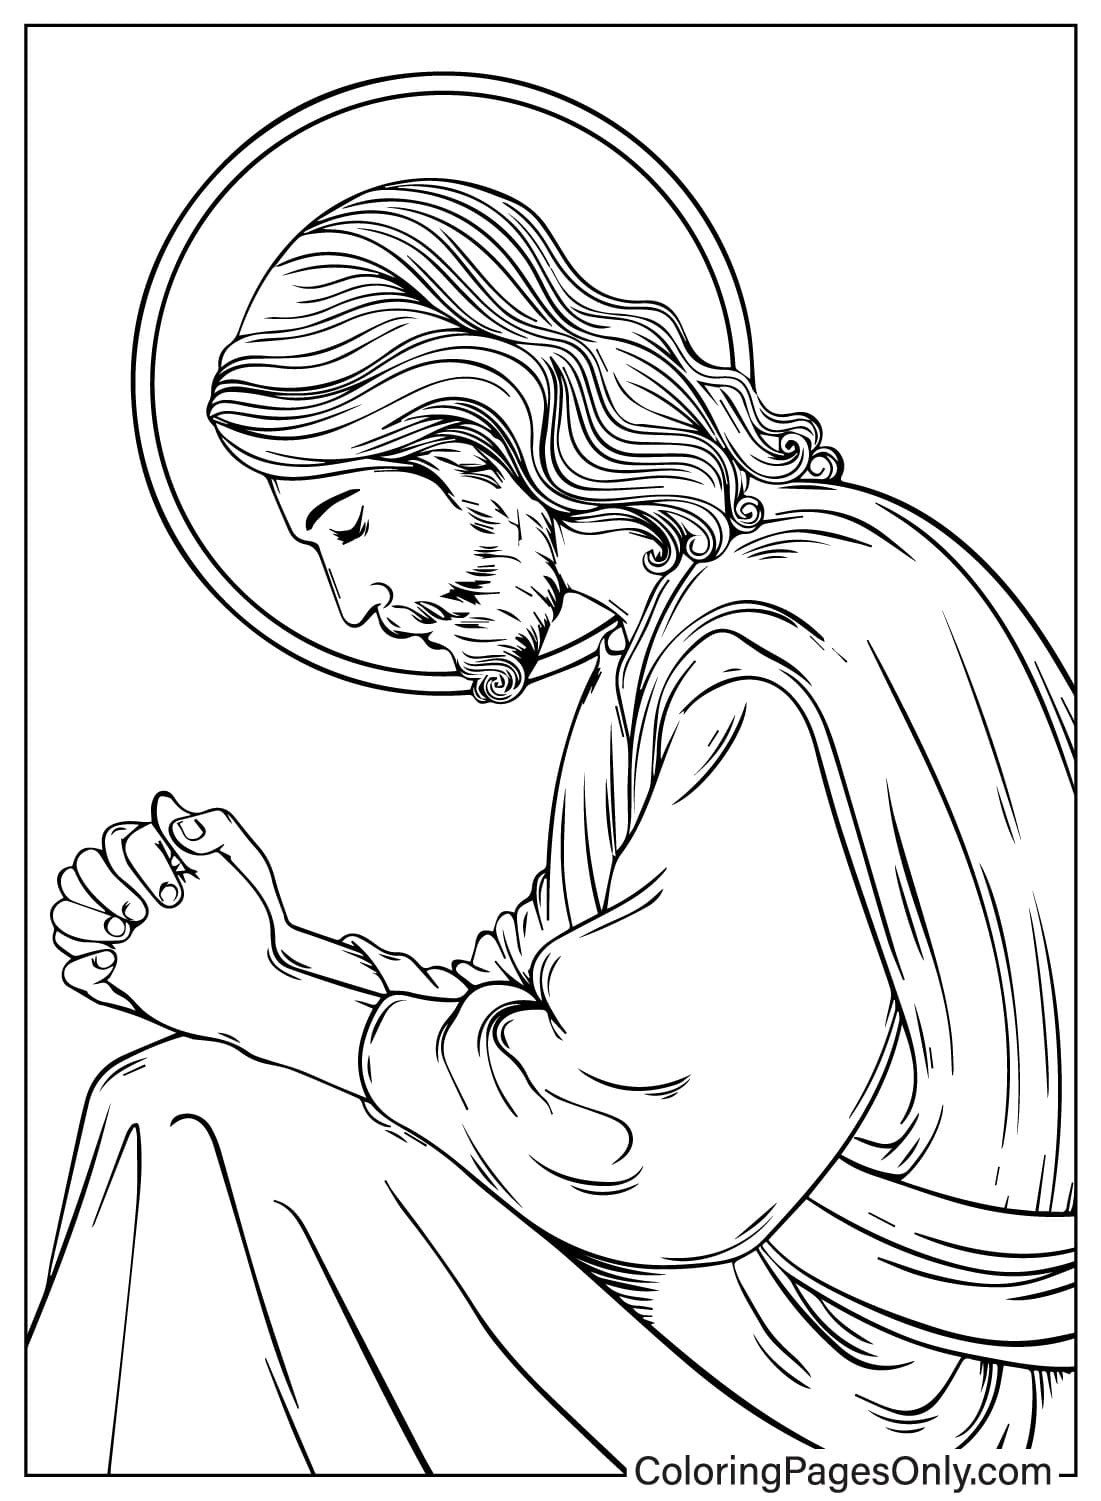 يسوع يصلي من يوم الصلاة